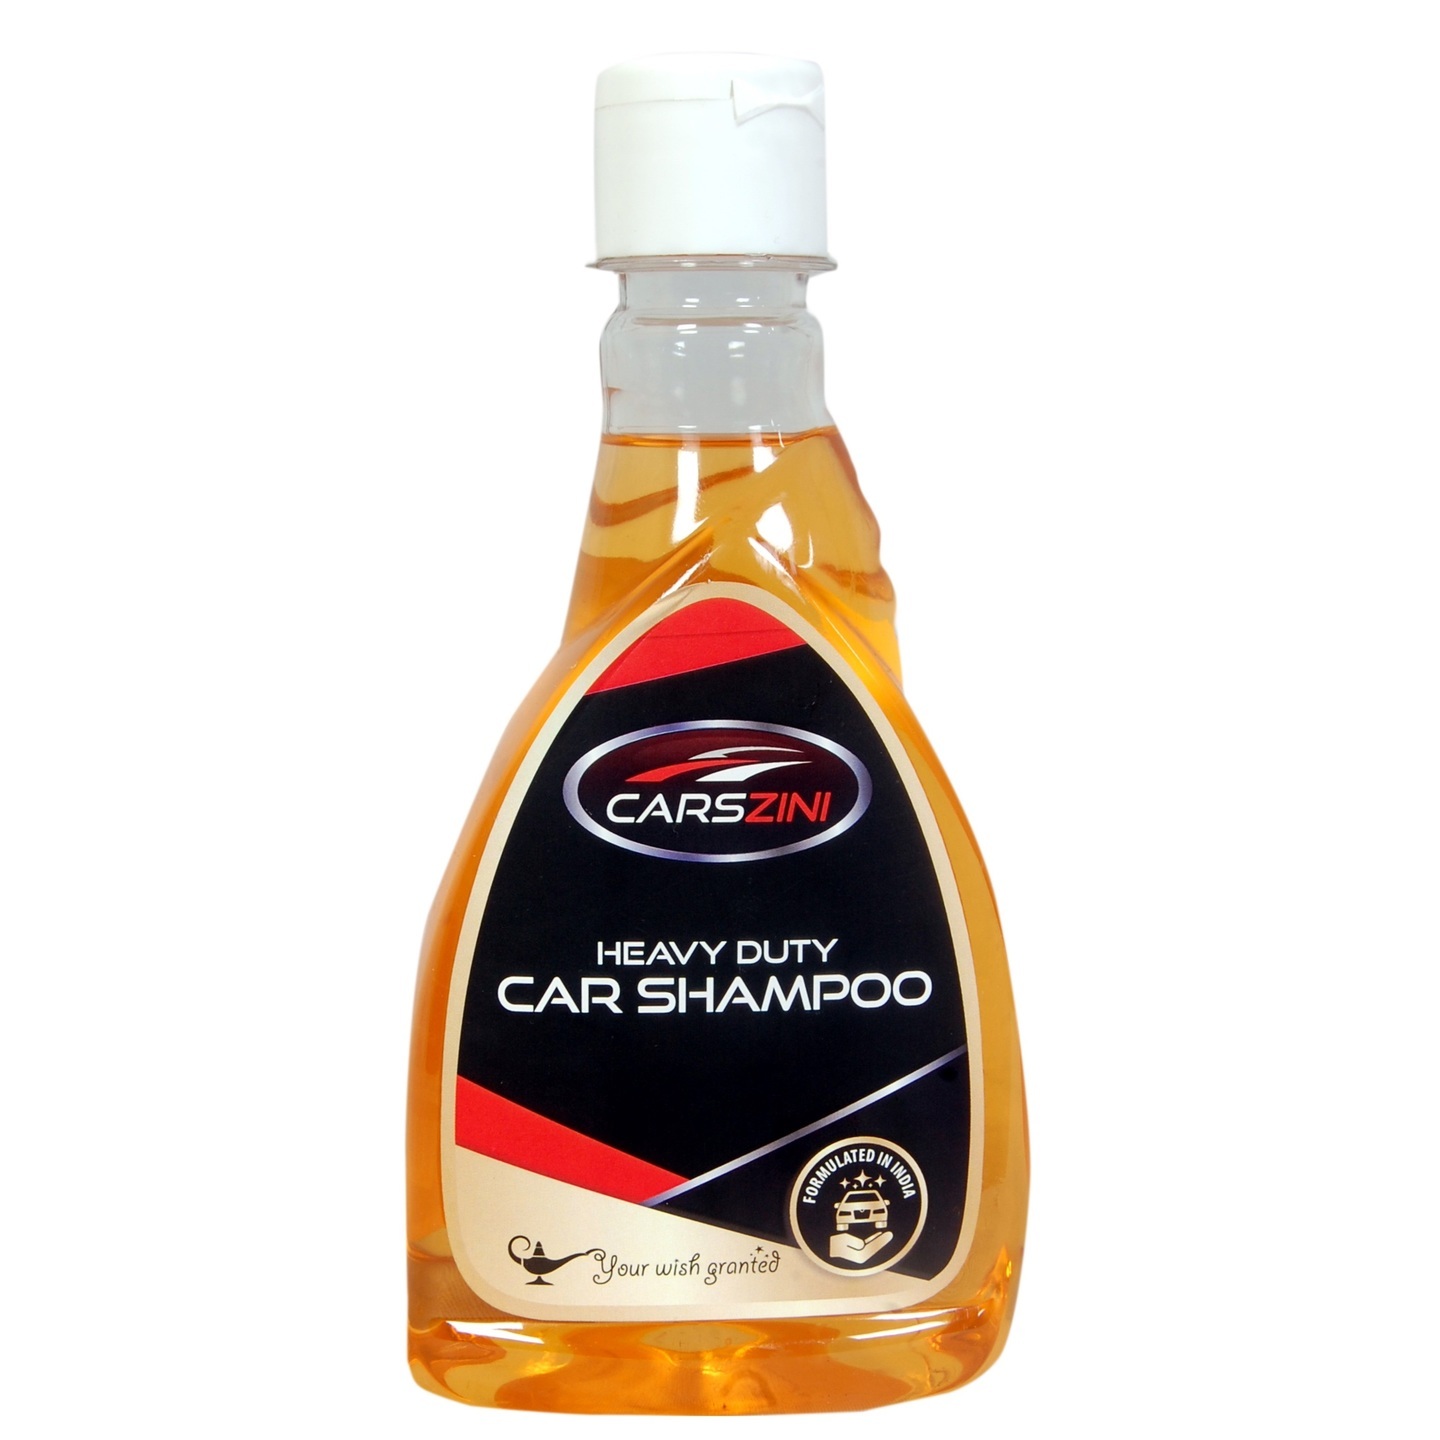 CARSZINI Heavy Duty Car Shampoo 330 ml